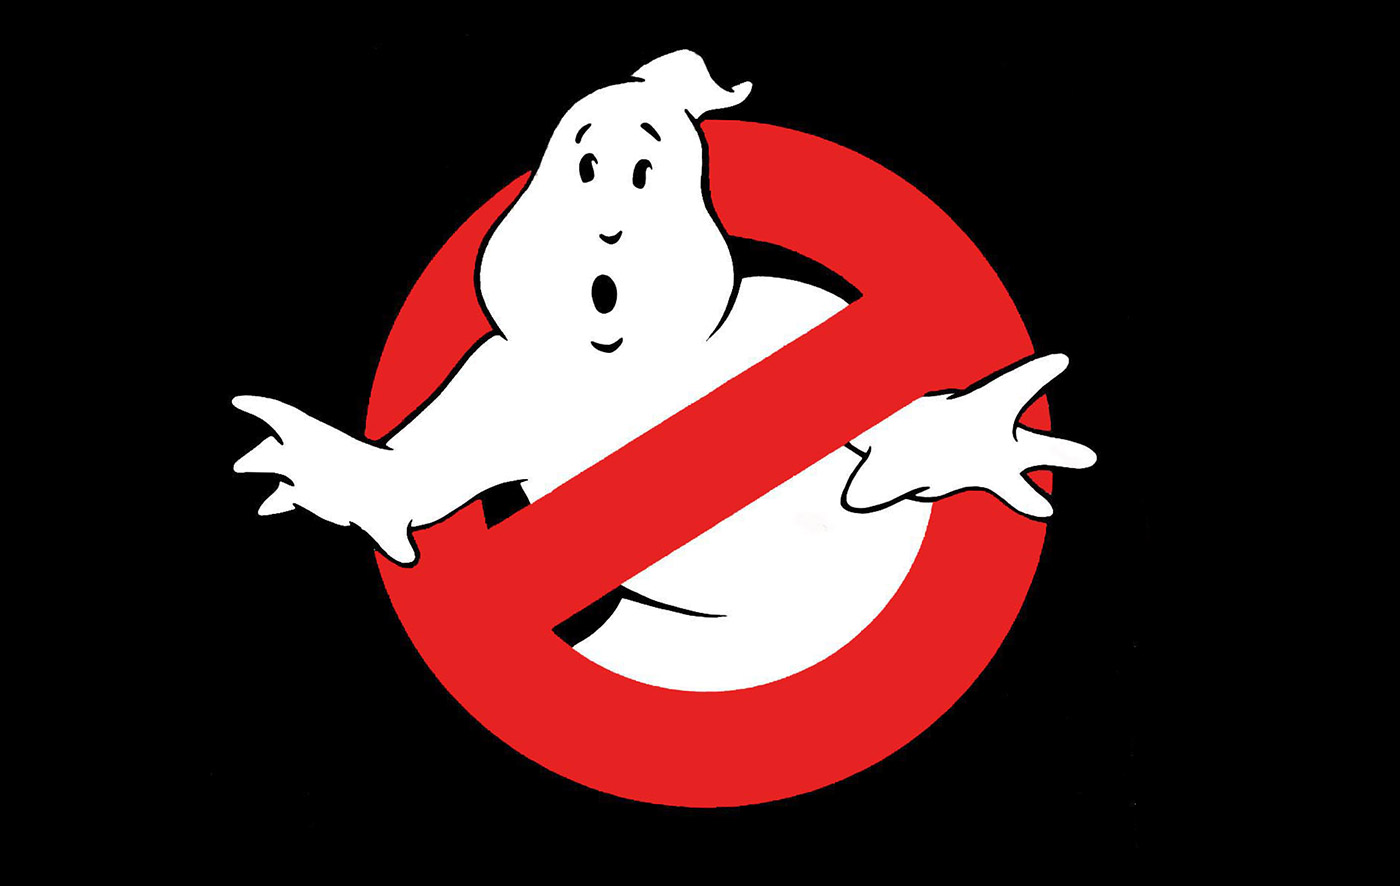 ghostbusters-logo-on-black.jpg